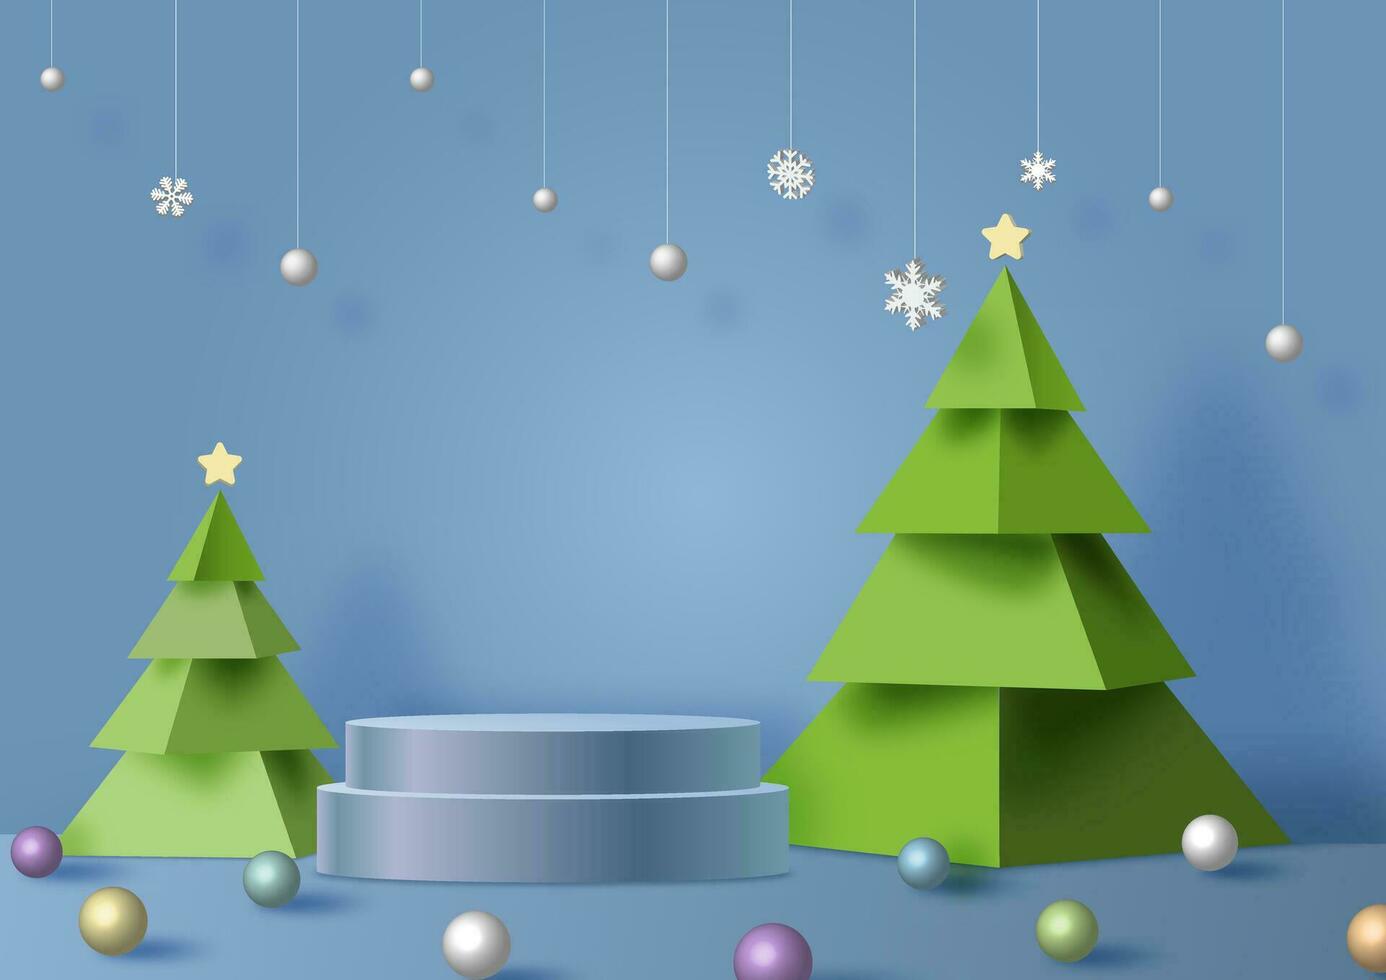 Poster Werbung mit Produkt Bühne von Weihnachten Feier im 3d Stil mit Schneeflocke dekoriert hängend auf Blau Hintergrund. alle im Vektor Design.